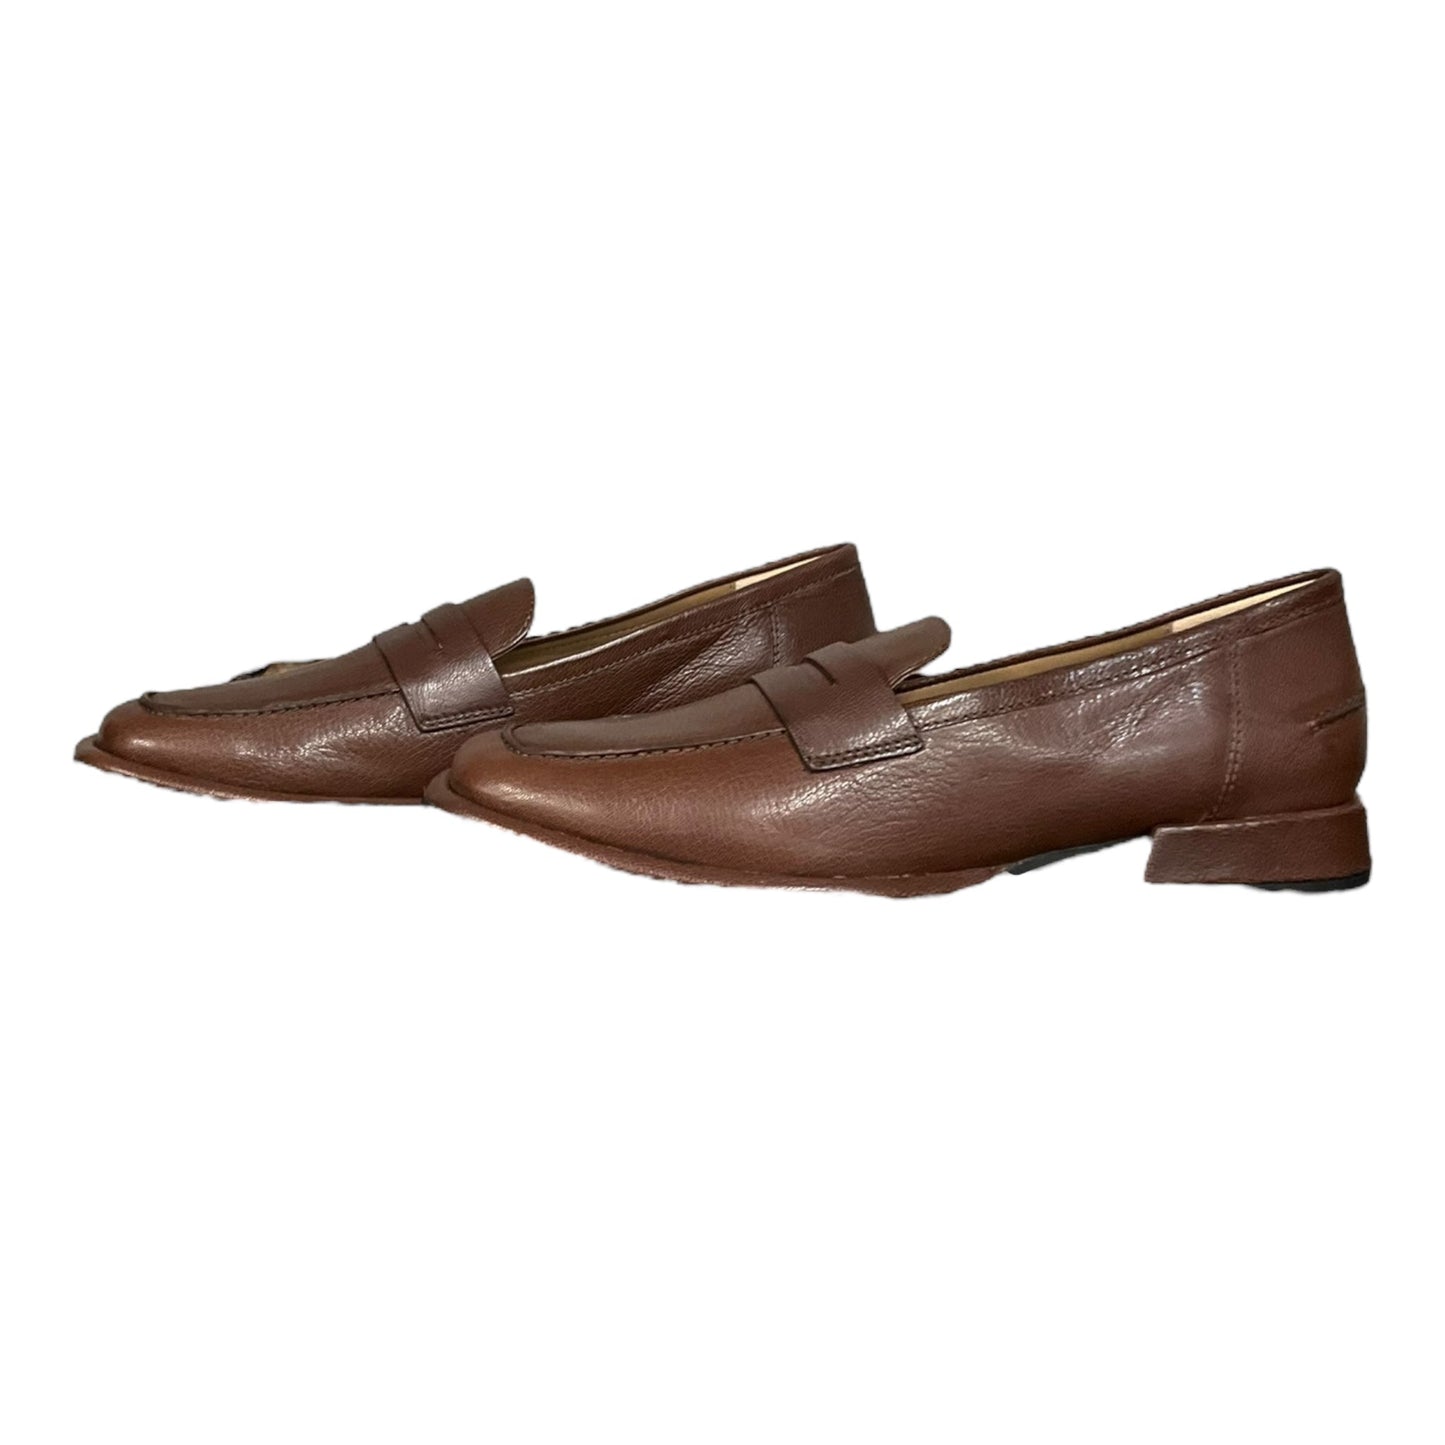 Brown Shoes Flats Saint Germain, Size 8.5